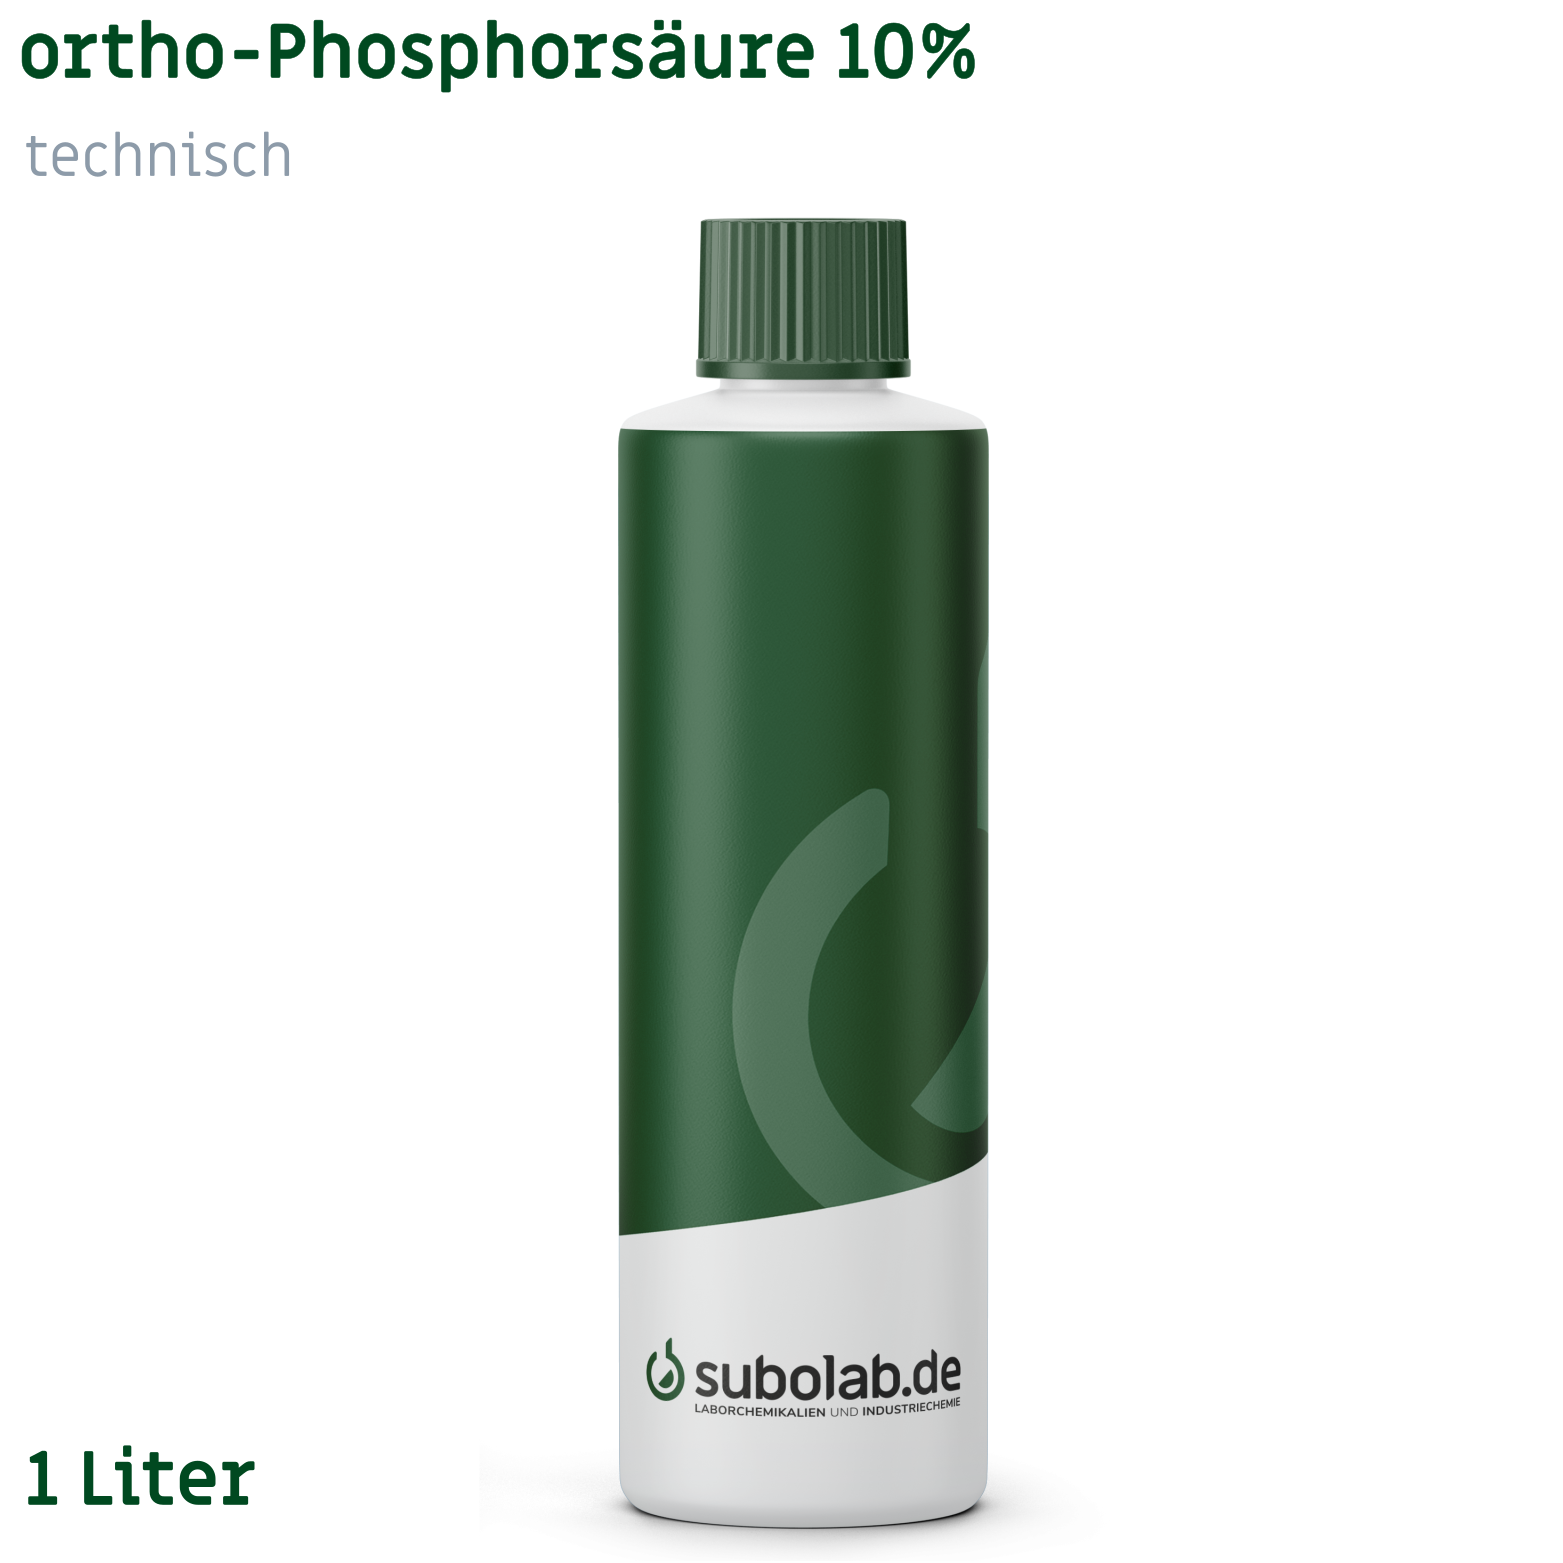 Bild von ortho-Phosphorsäure 10% technisch (1 Liter)